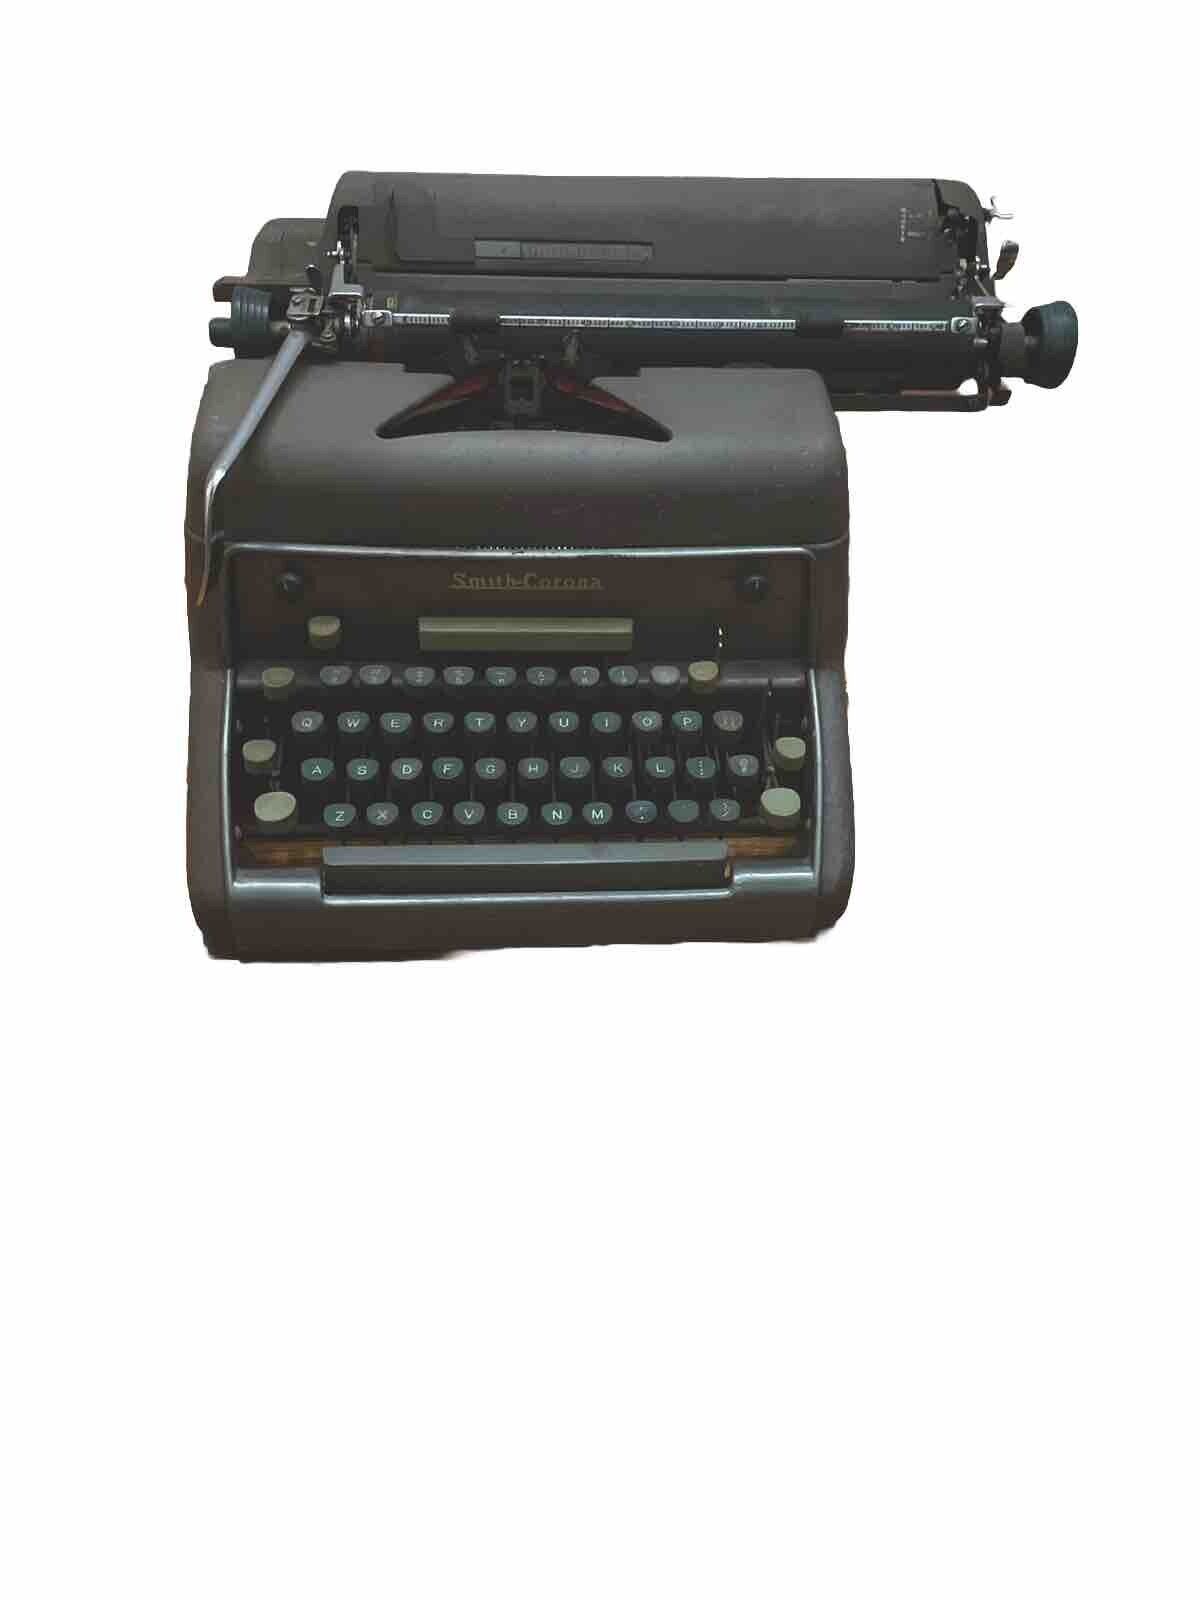 vintage manual typewriter working